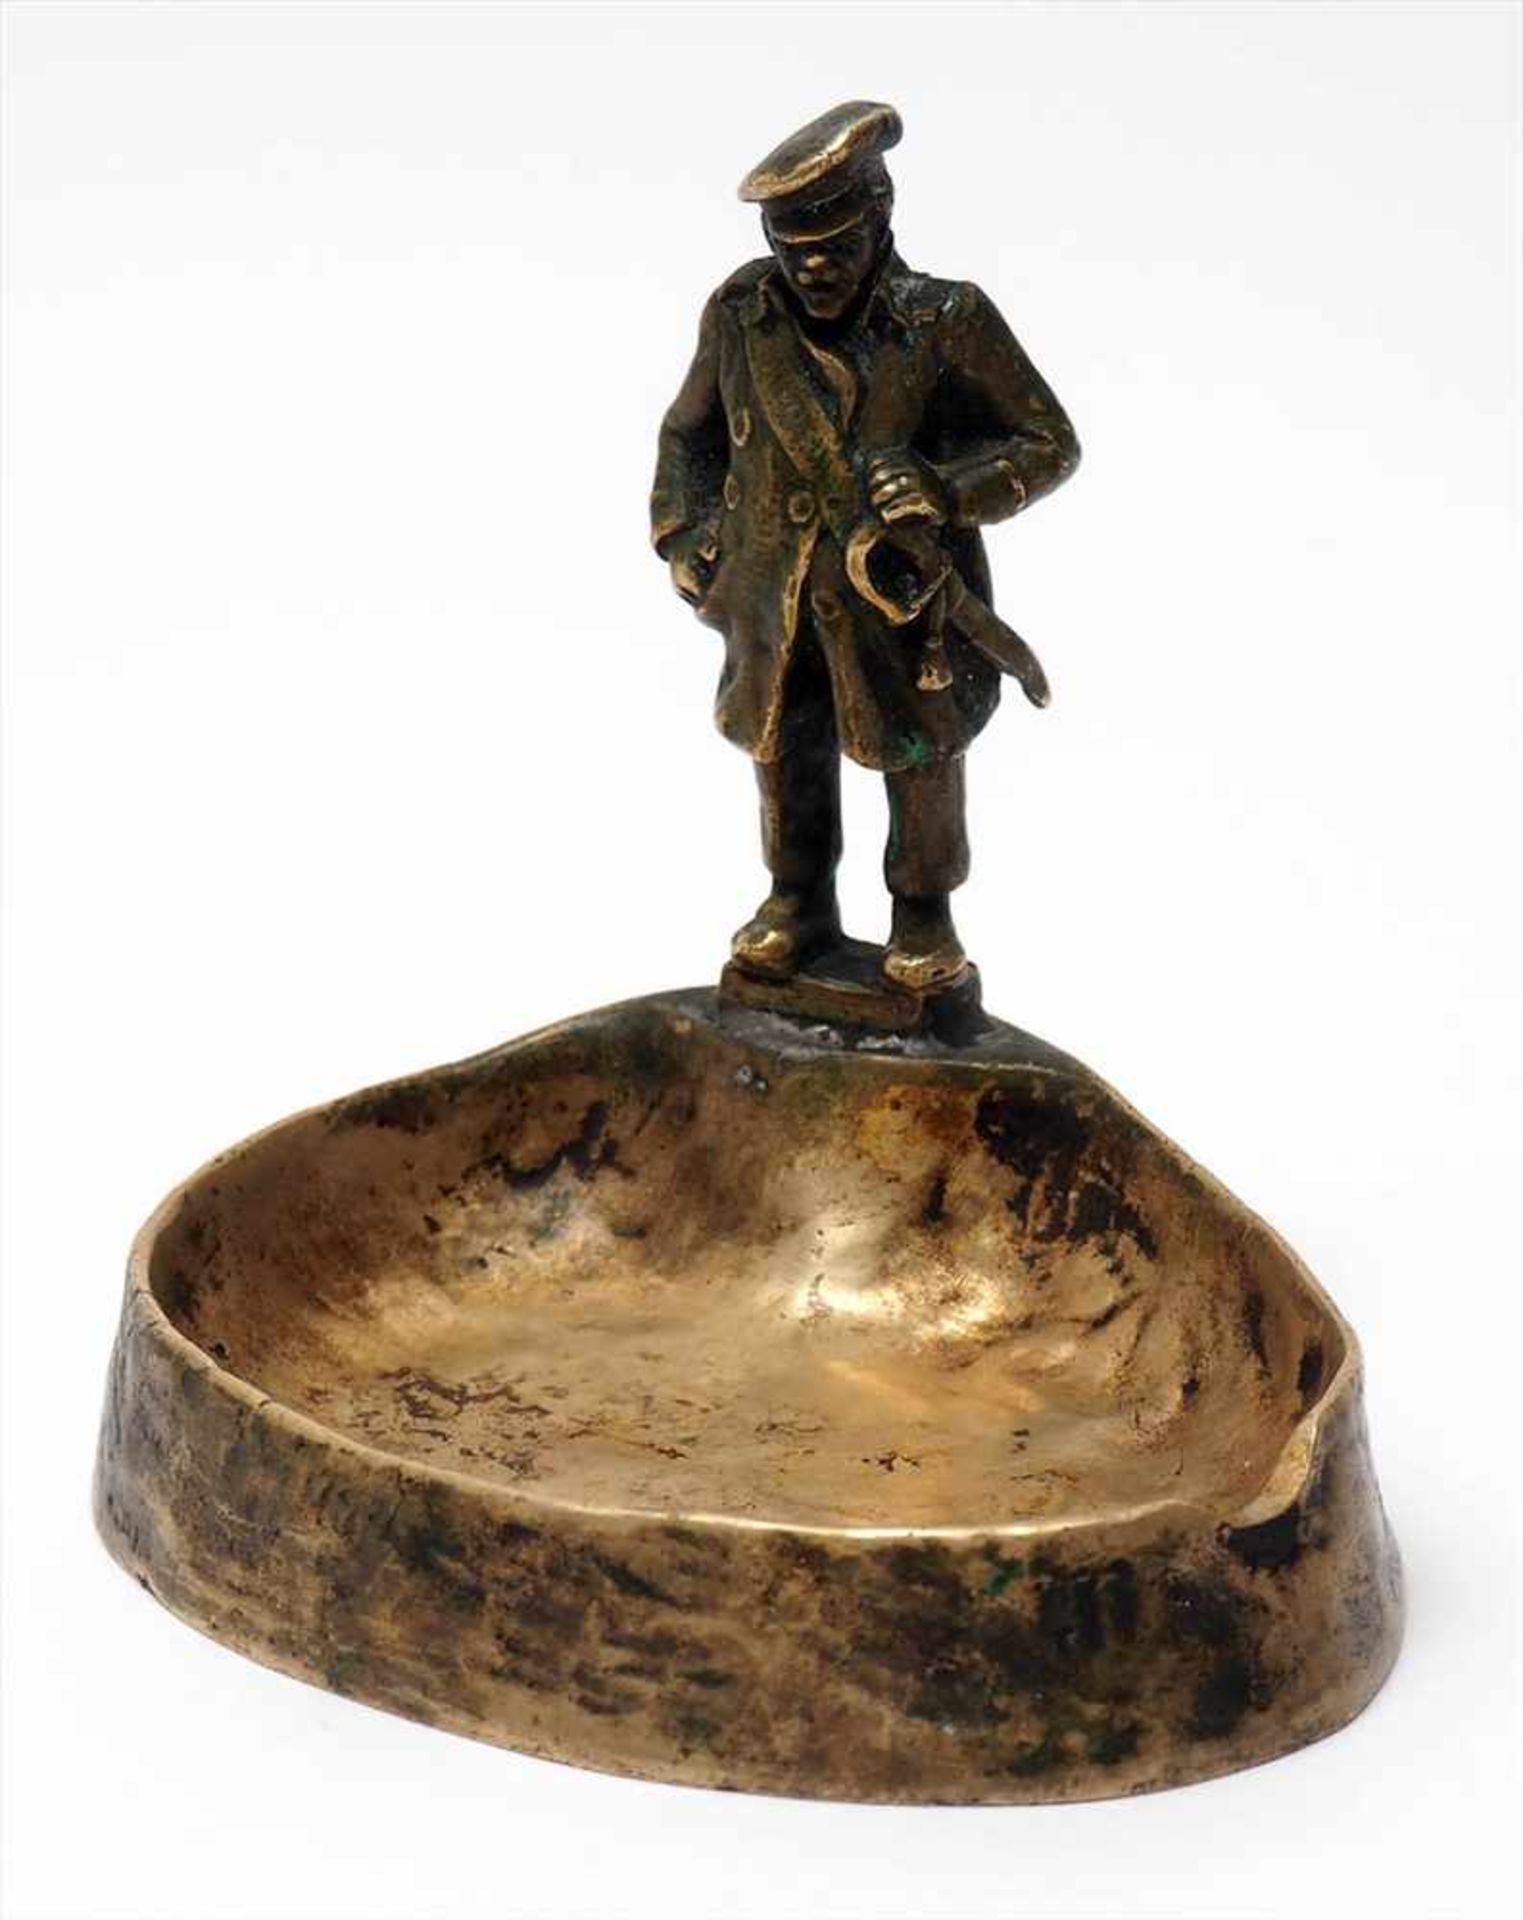 SoldatenfigurMit schräger Mütze, Schnauzbart und Säbel, als Randfigur einer Bronzeschale. Verso